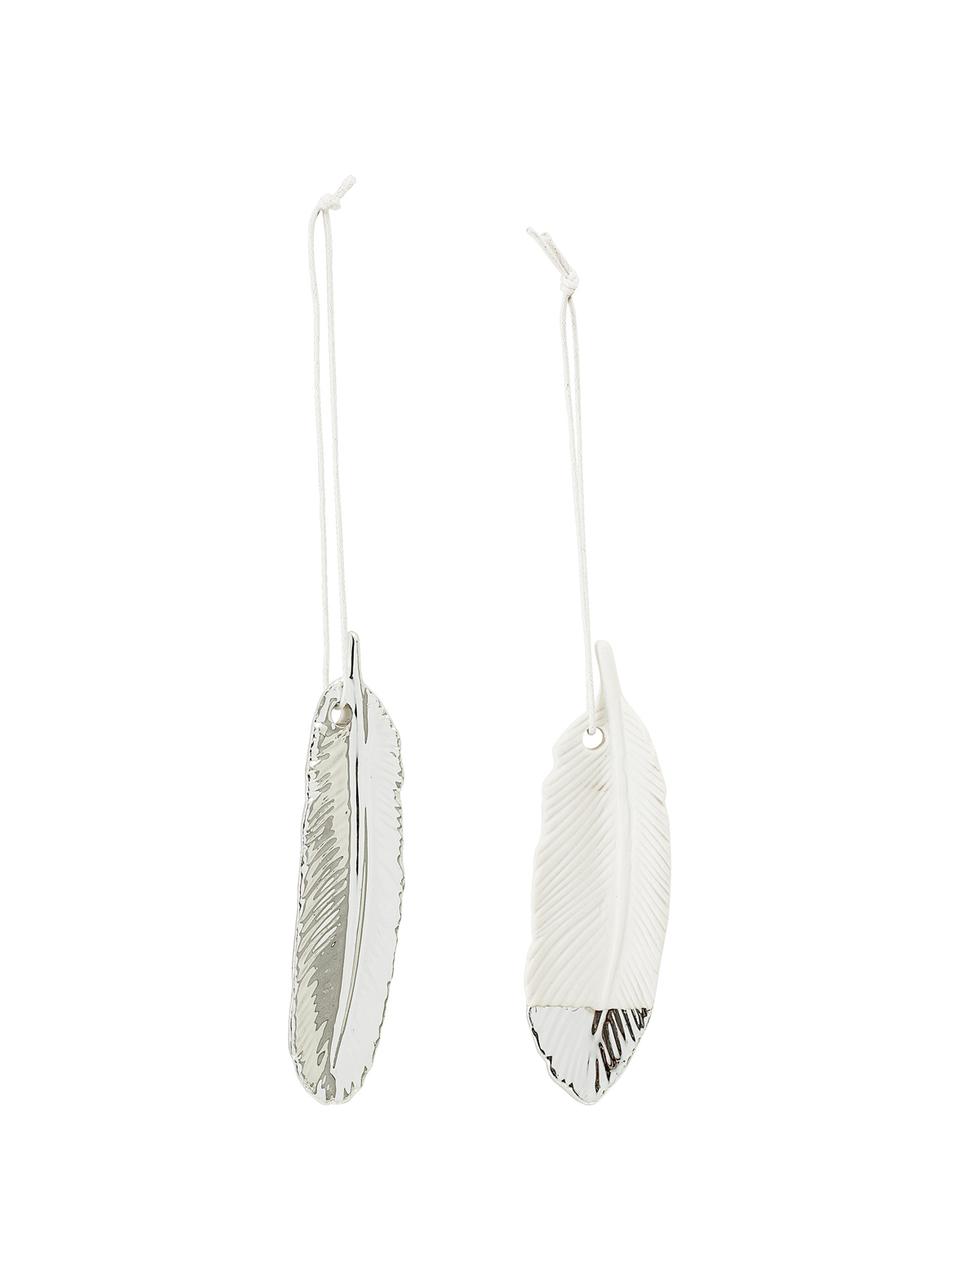 Deko-Anhänger-Set Feathers, 2-tlg., Steingut, Silberfarben, Weiß, 3 x 10 cm